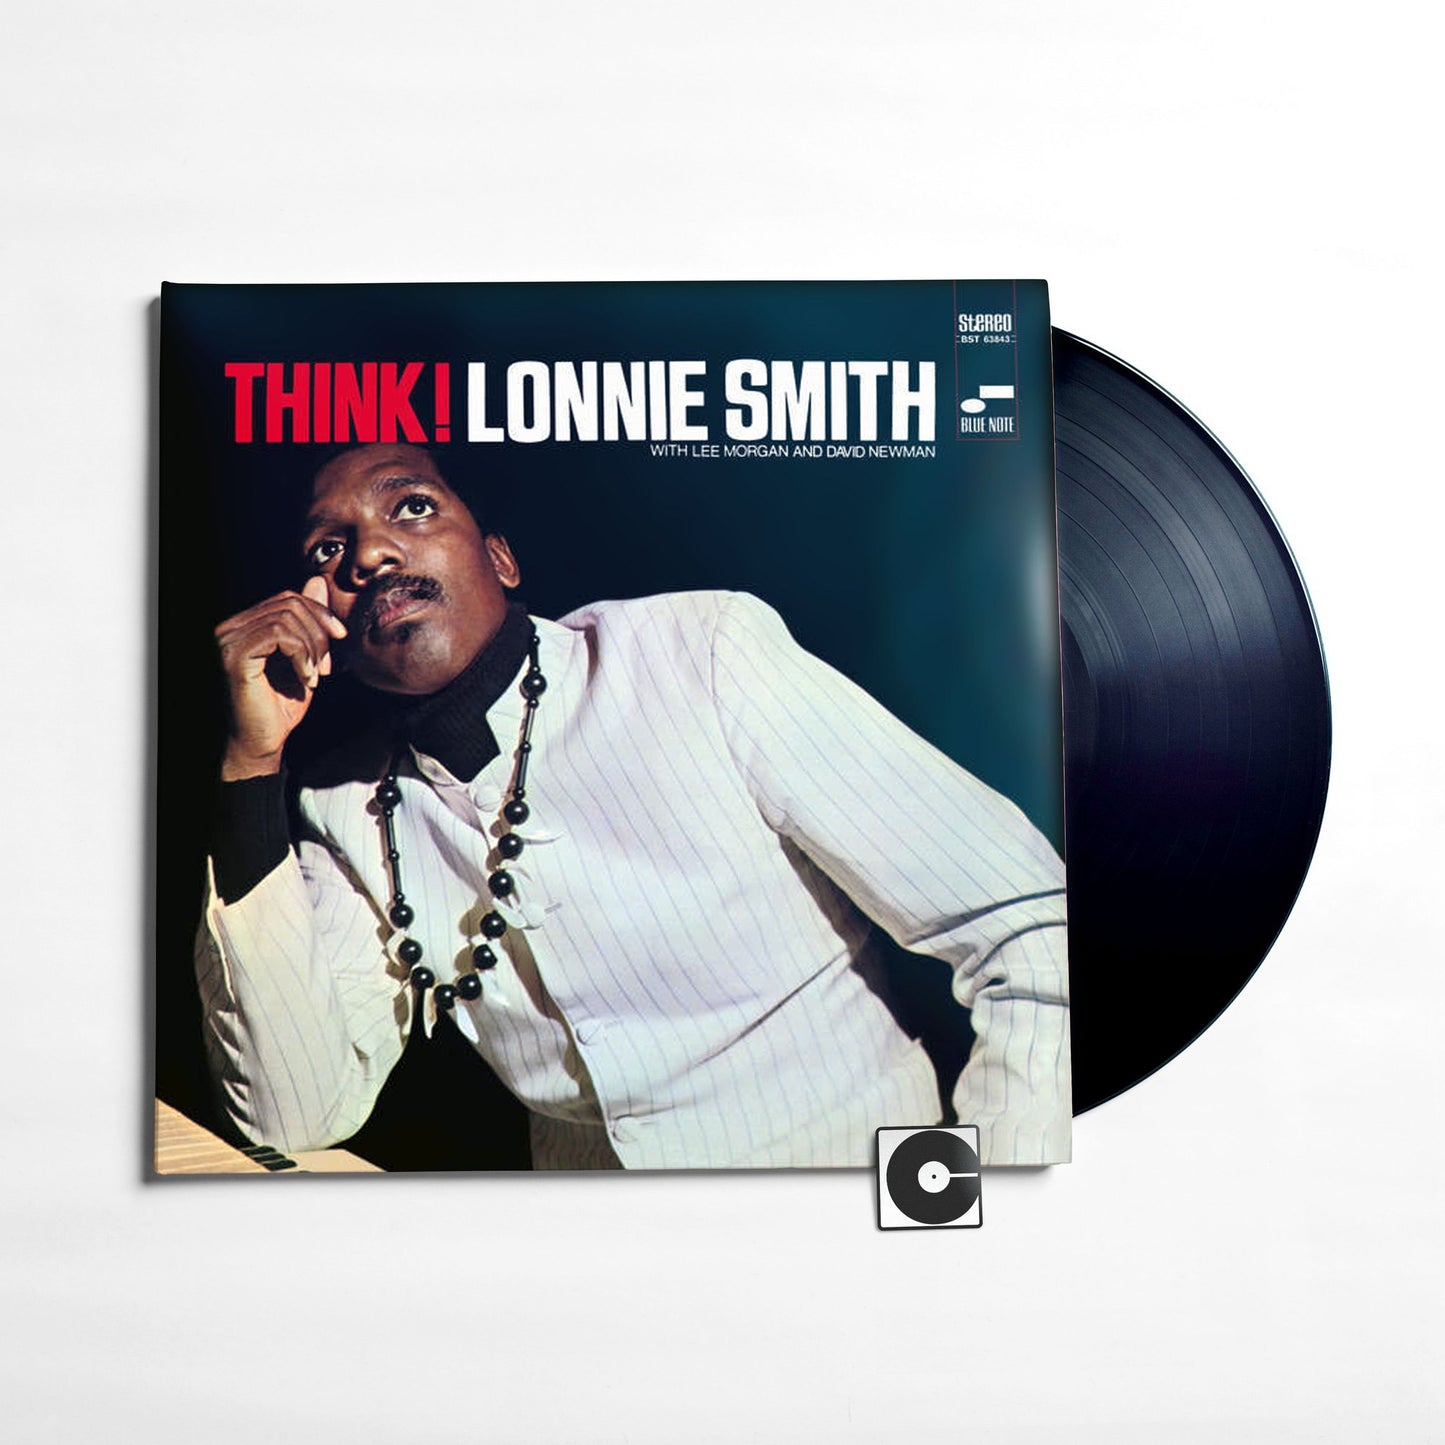 Lonnie Smith - "Think!"